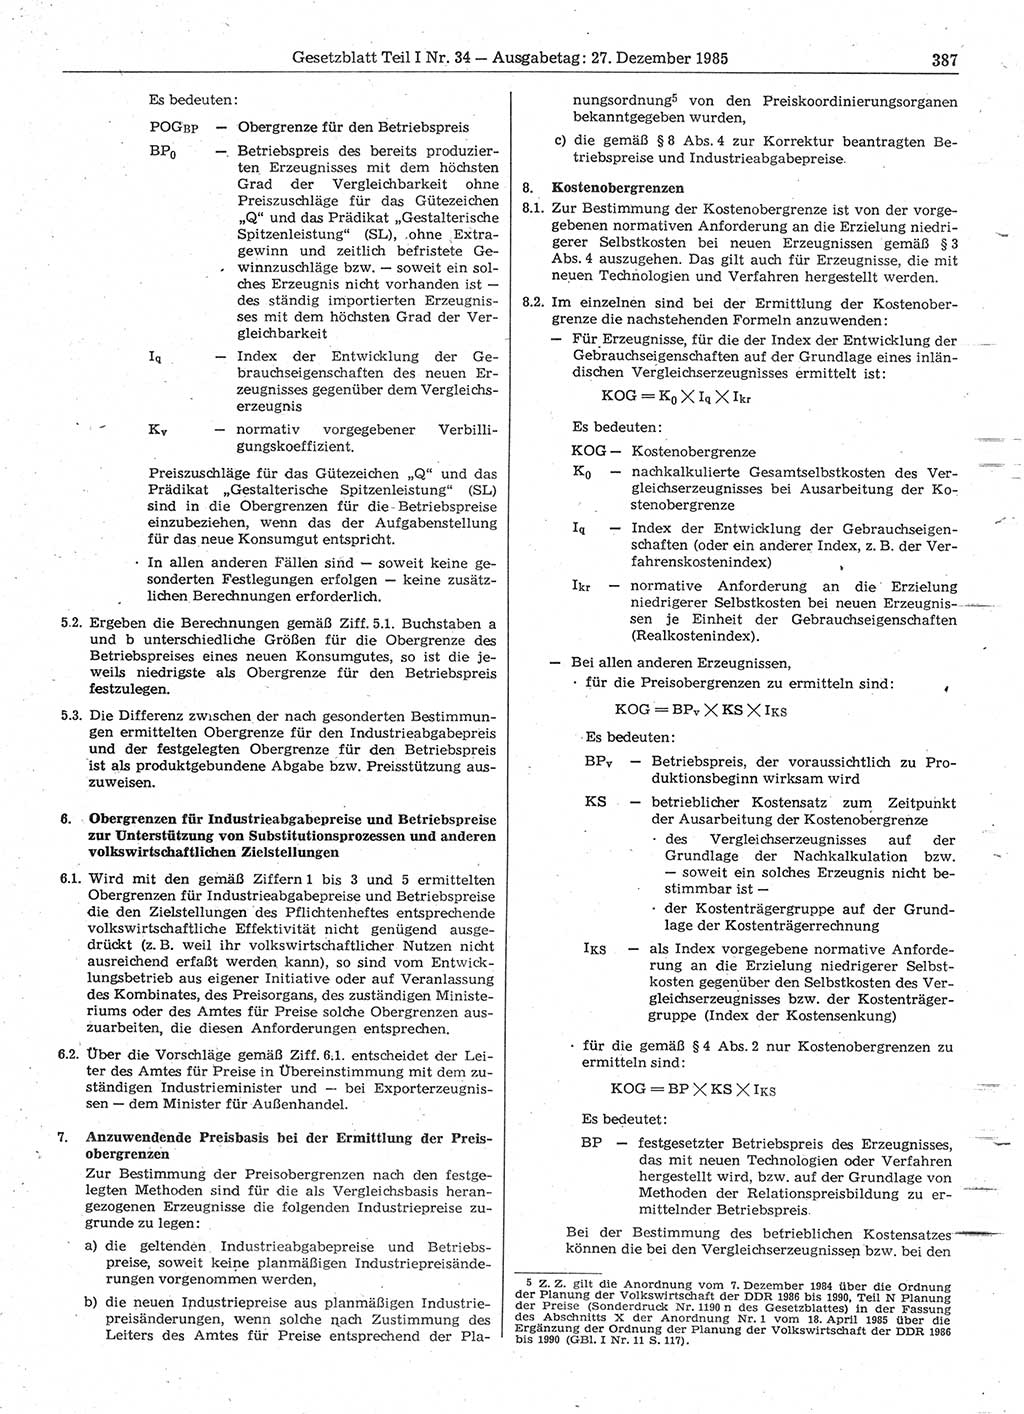 Gesetzblatt (GBl.) der Deutschen Demokratischen Republik (DDR) Teil Ⅰ 1985, Seite 387 (GBl. DDR Ⅰ 1985, S. 387)